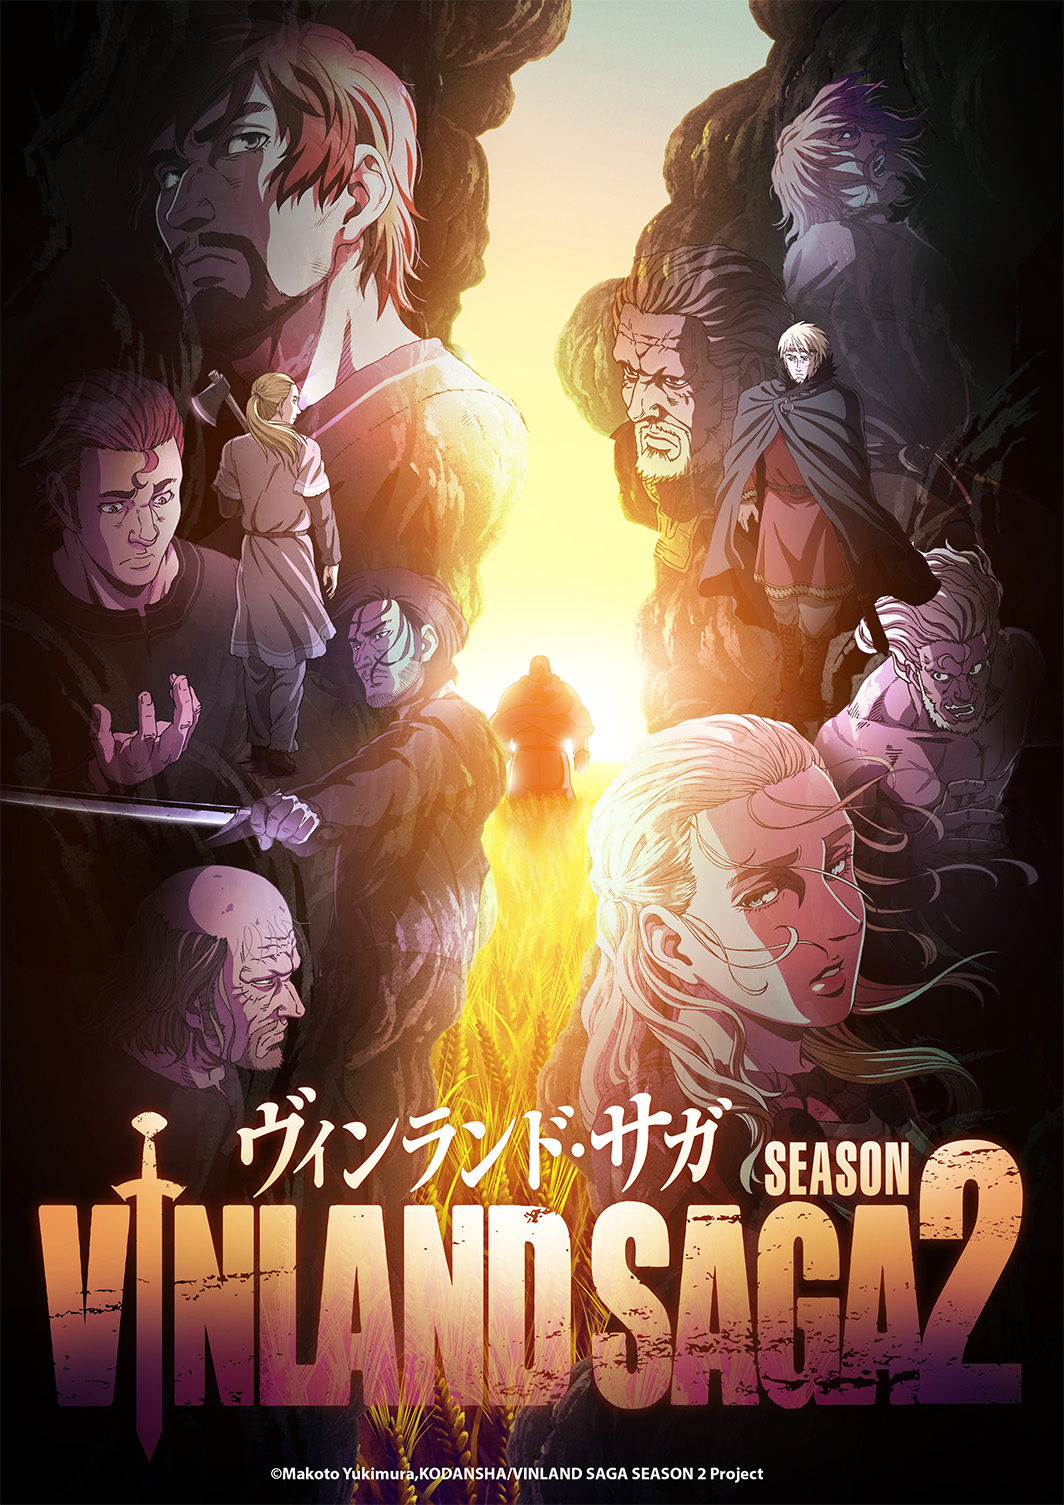 Imagen clave del anime de la temporada 2 de Vinland Saga